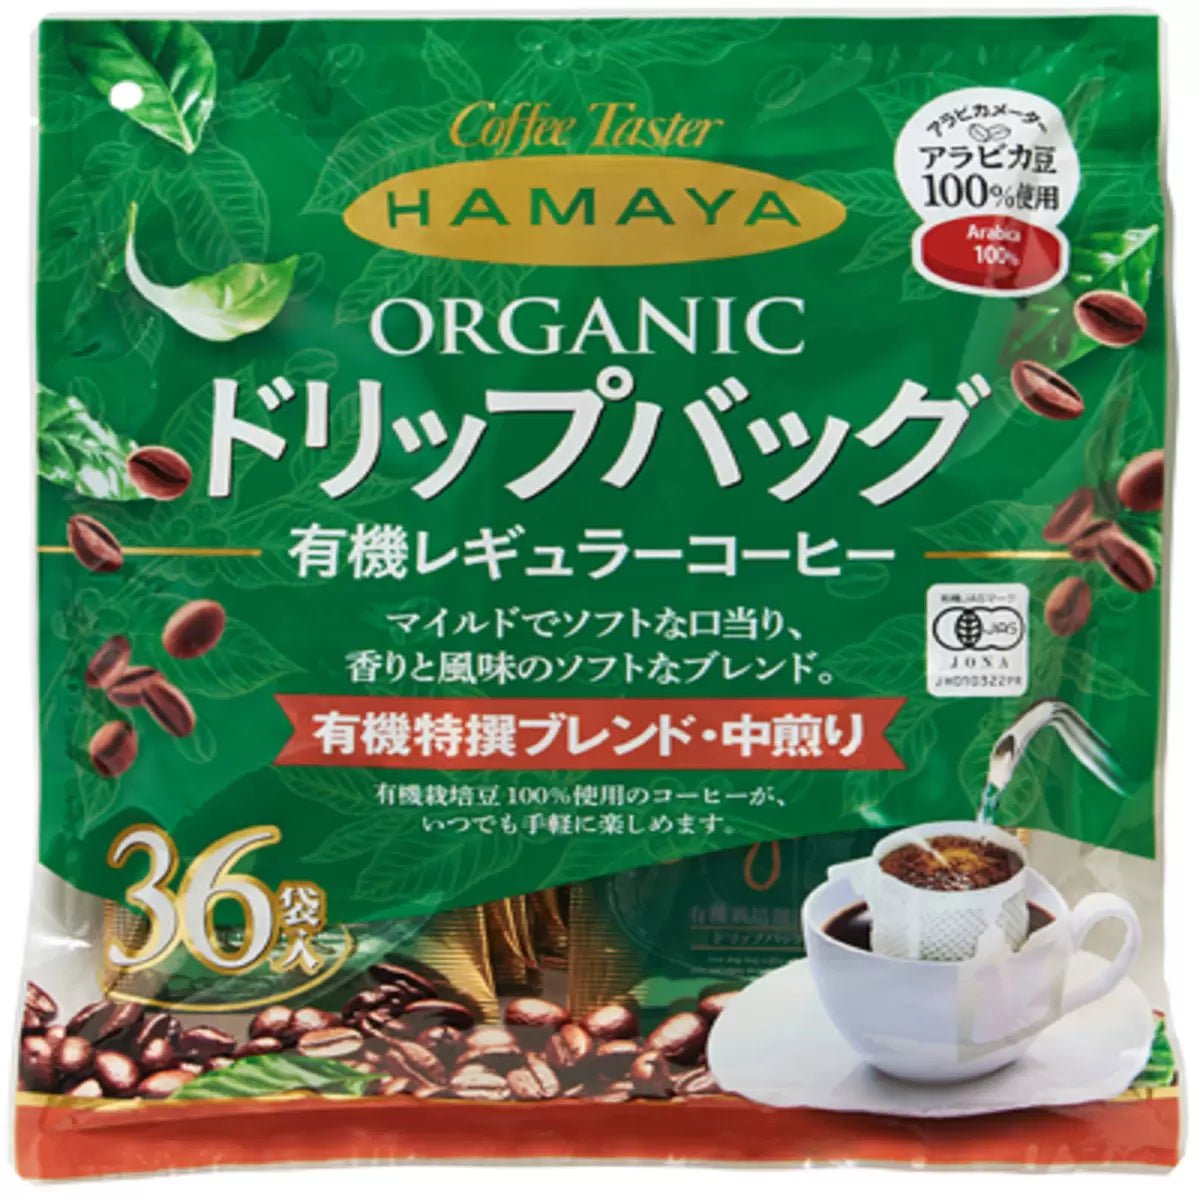 ハマヤ 有機 ドリップバッグコーヒー 36袋 HAMAYA Organic Drip Bag Coffee 36 pack - HAPIVERI